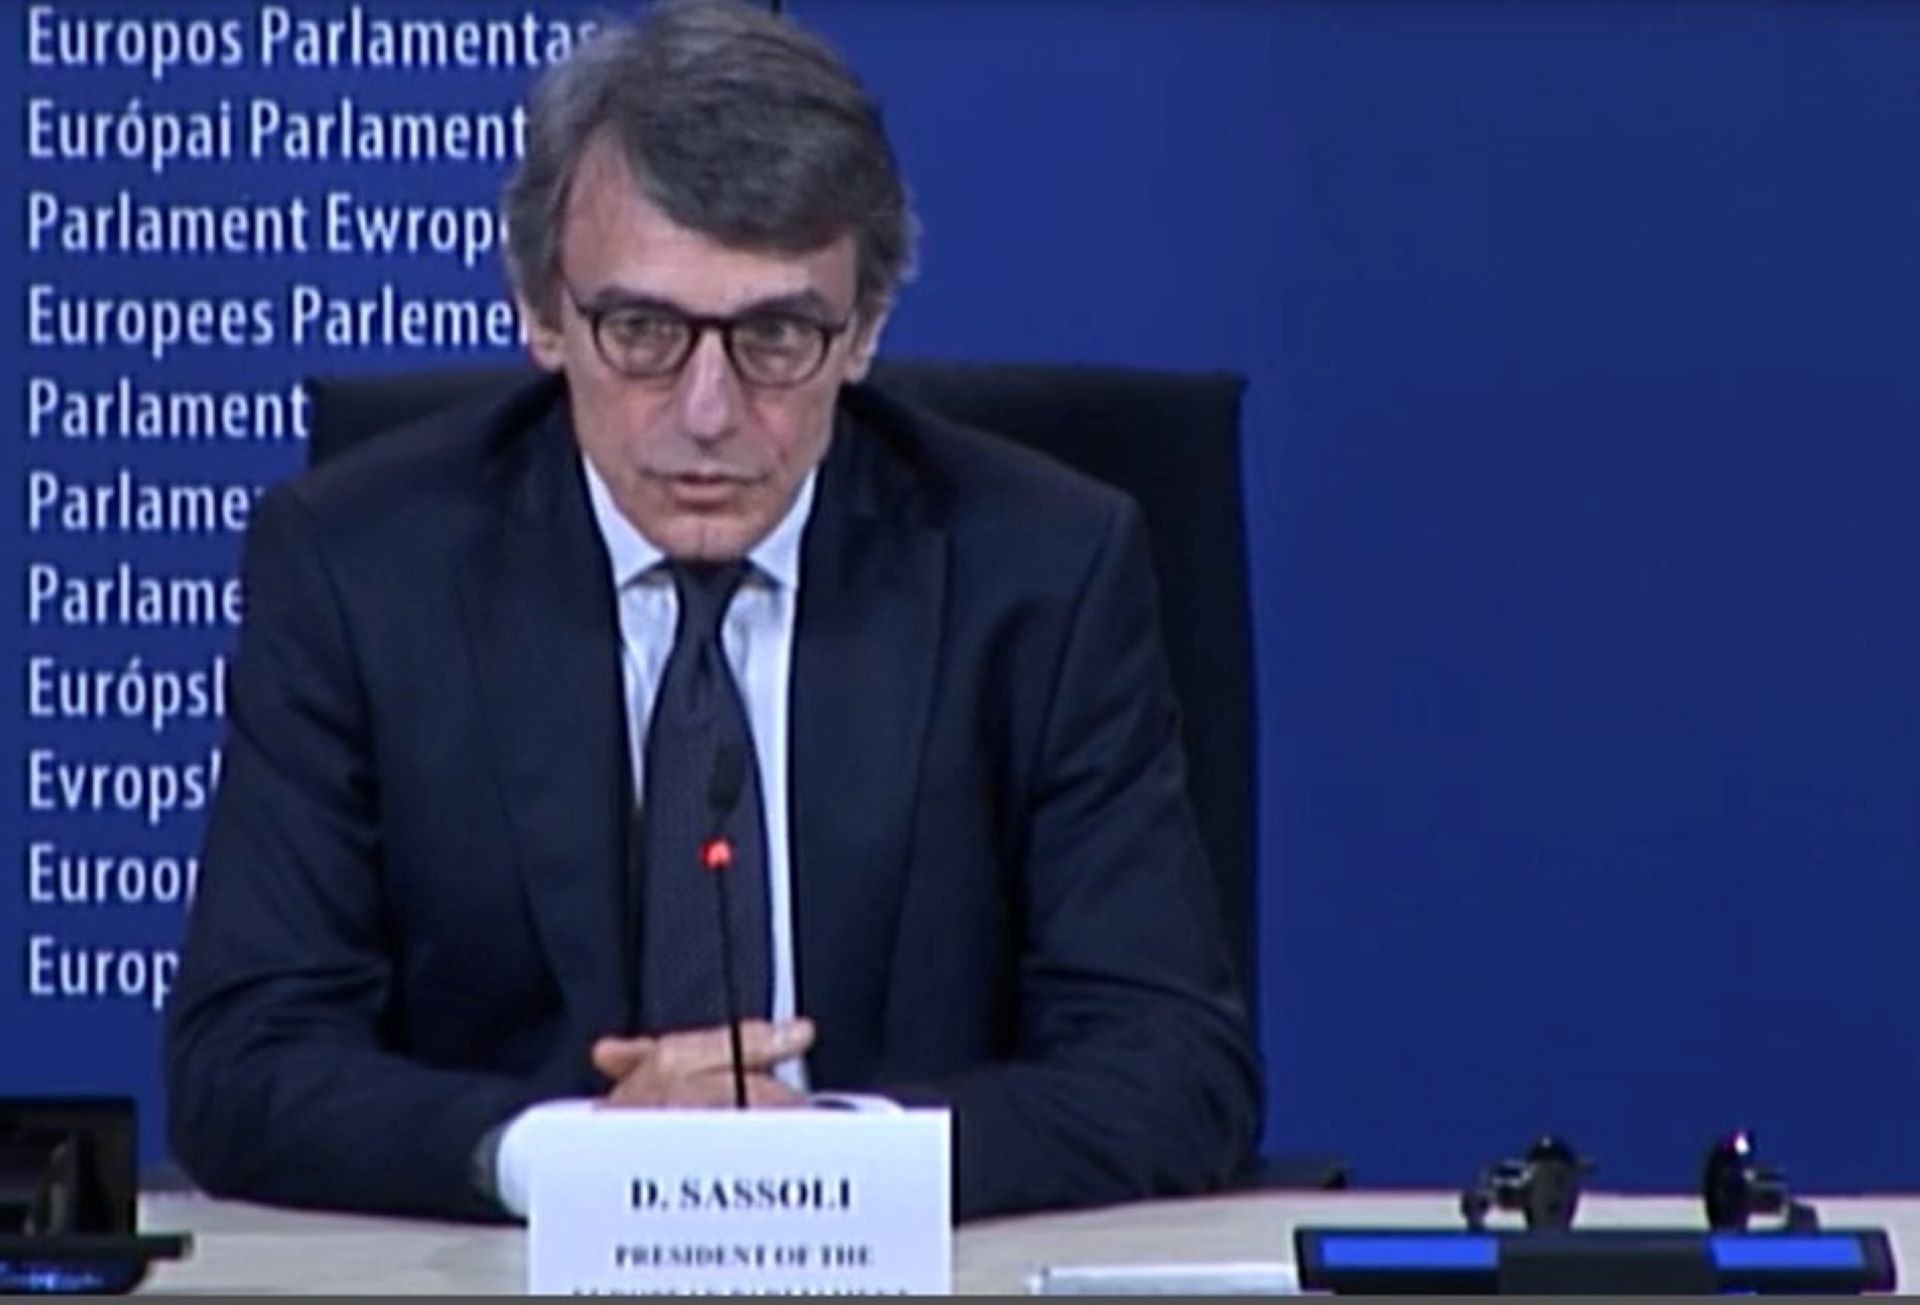 Parlamento europeo: Conferenza stampa Sassoli, Ecco il video